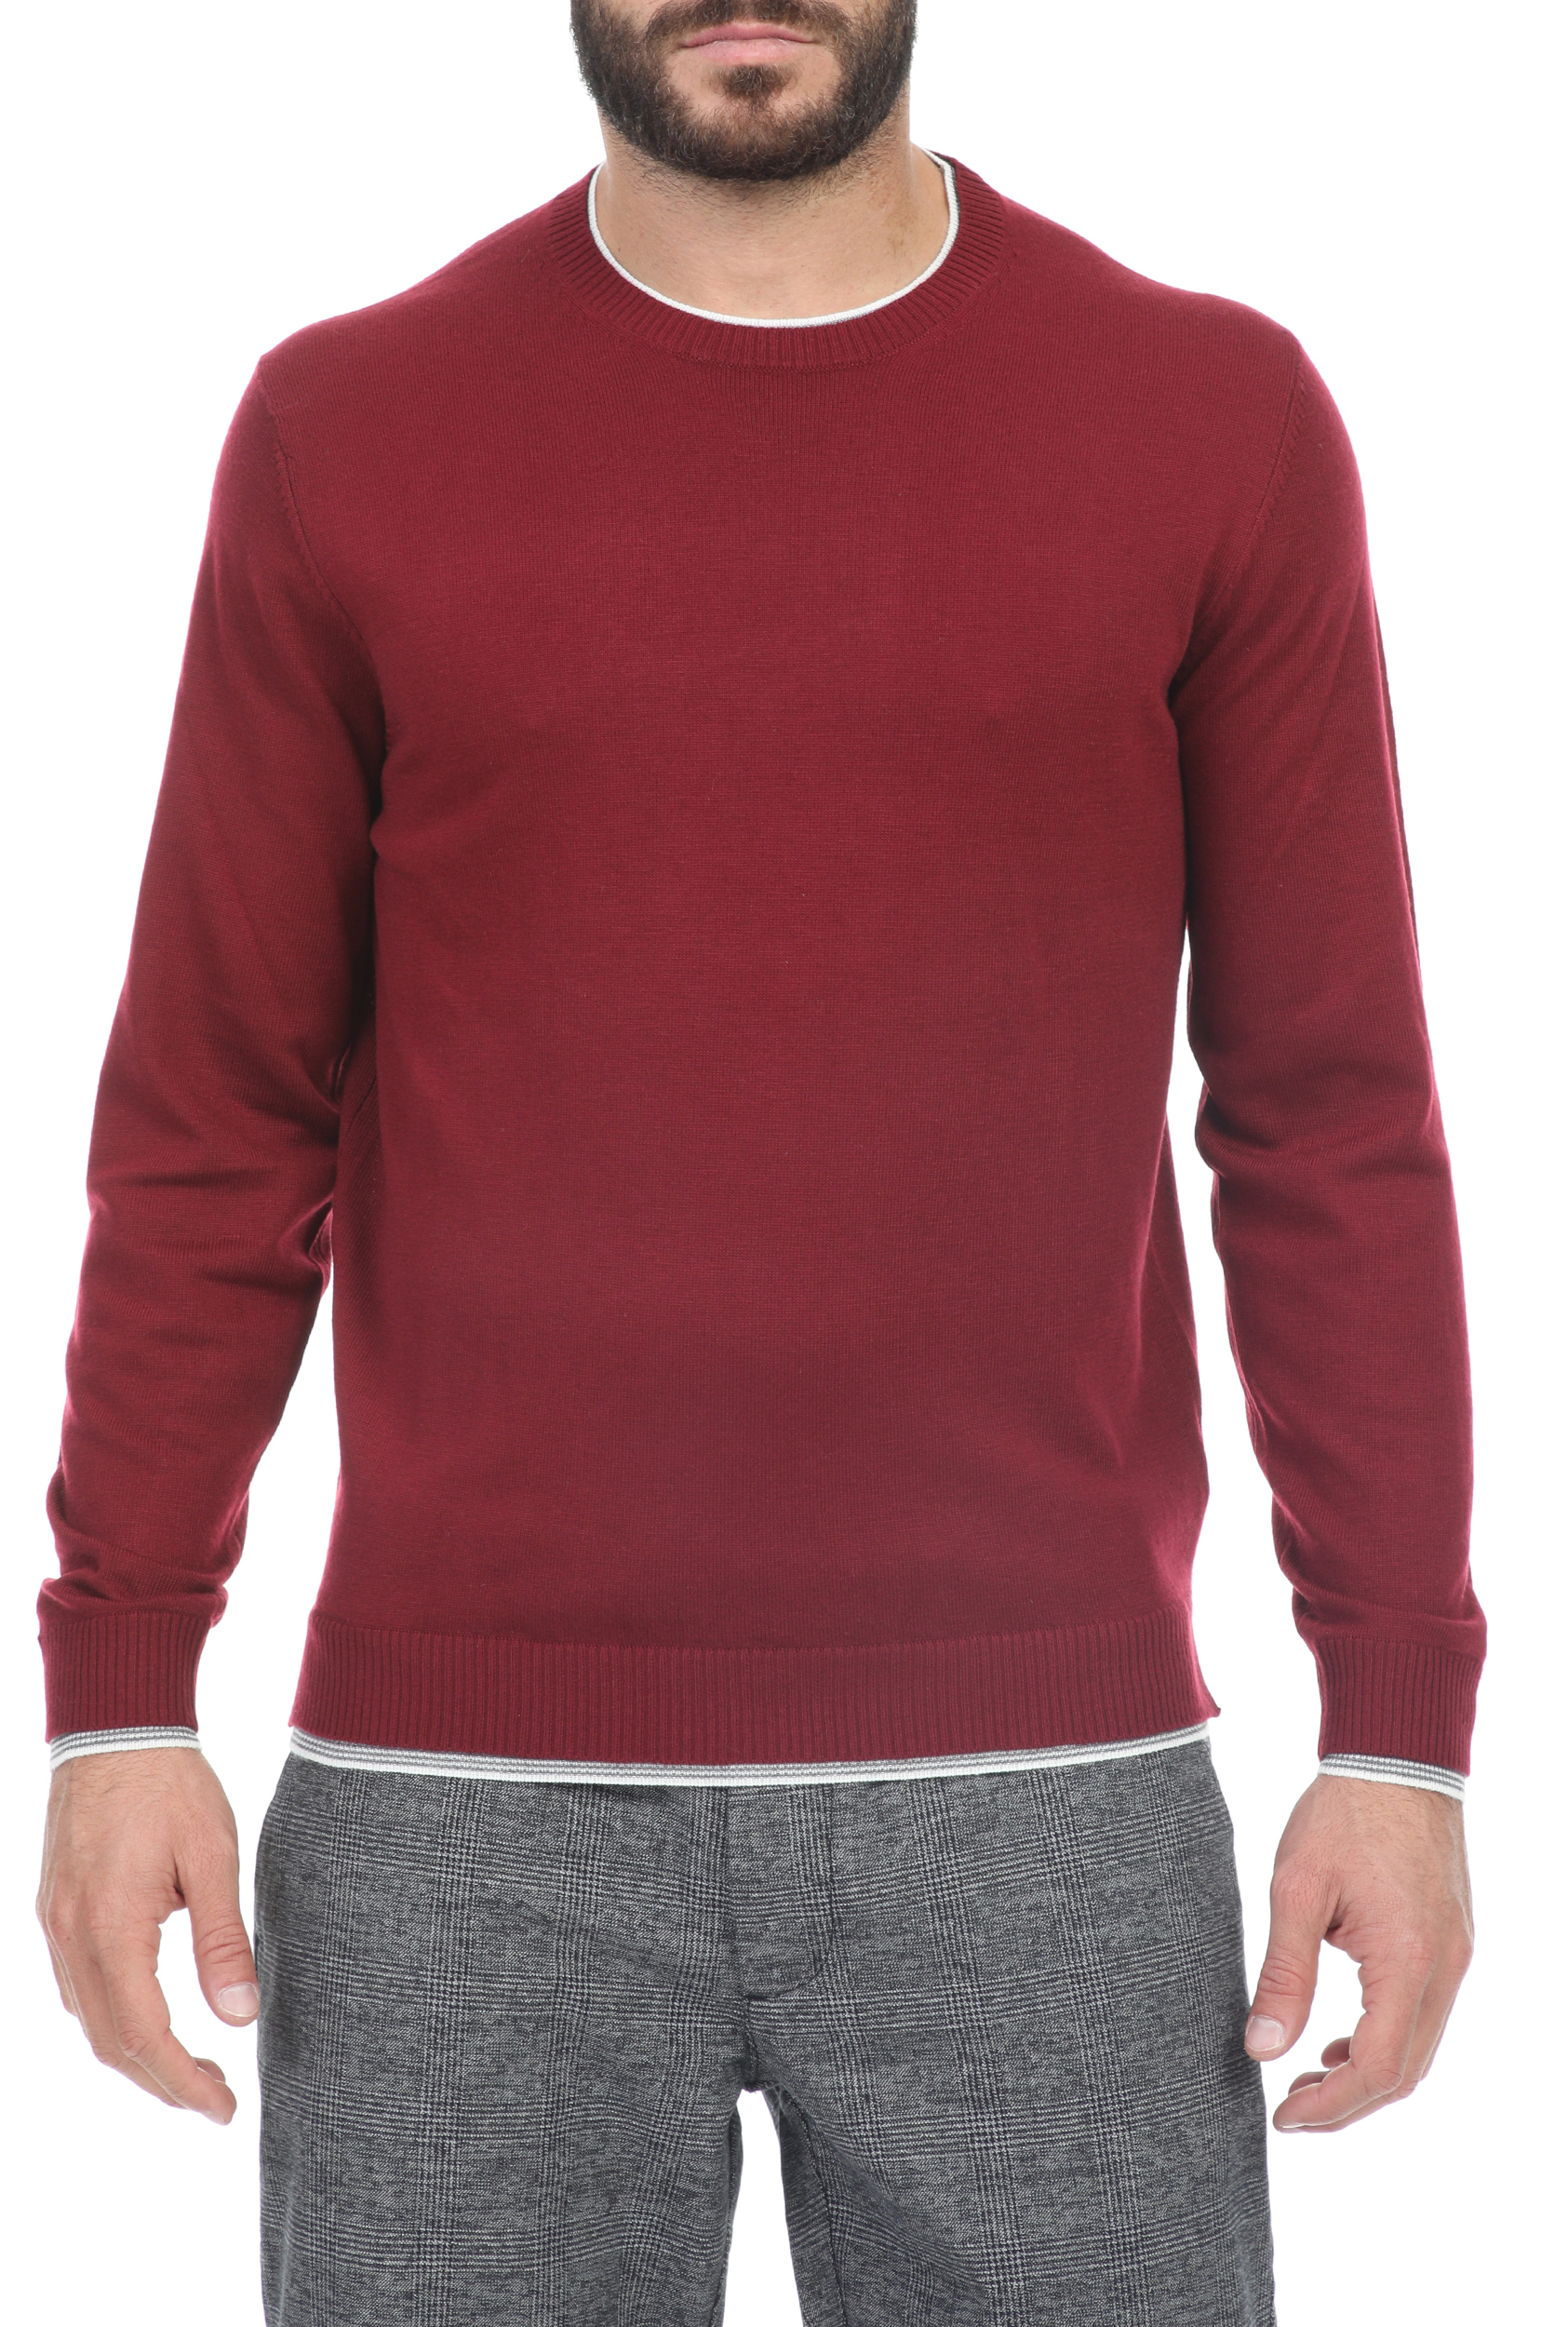 Ανδρικά/Ρούχα/Πλεκτά-Ζακέτες/Μπλούζες SSEINSE - Ανδρική πλεκτή μπλούζα SSEINSE κόκκινη